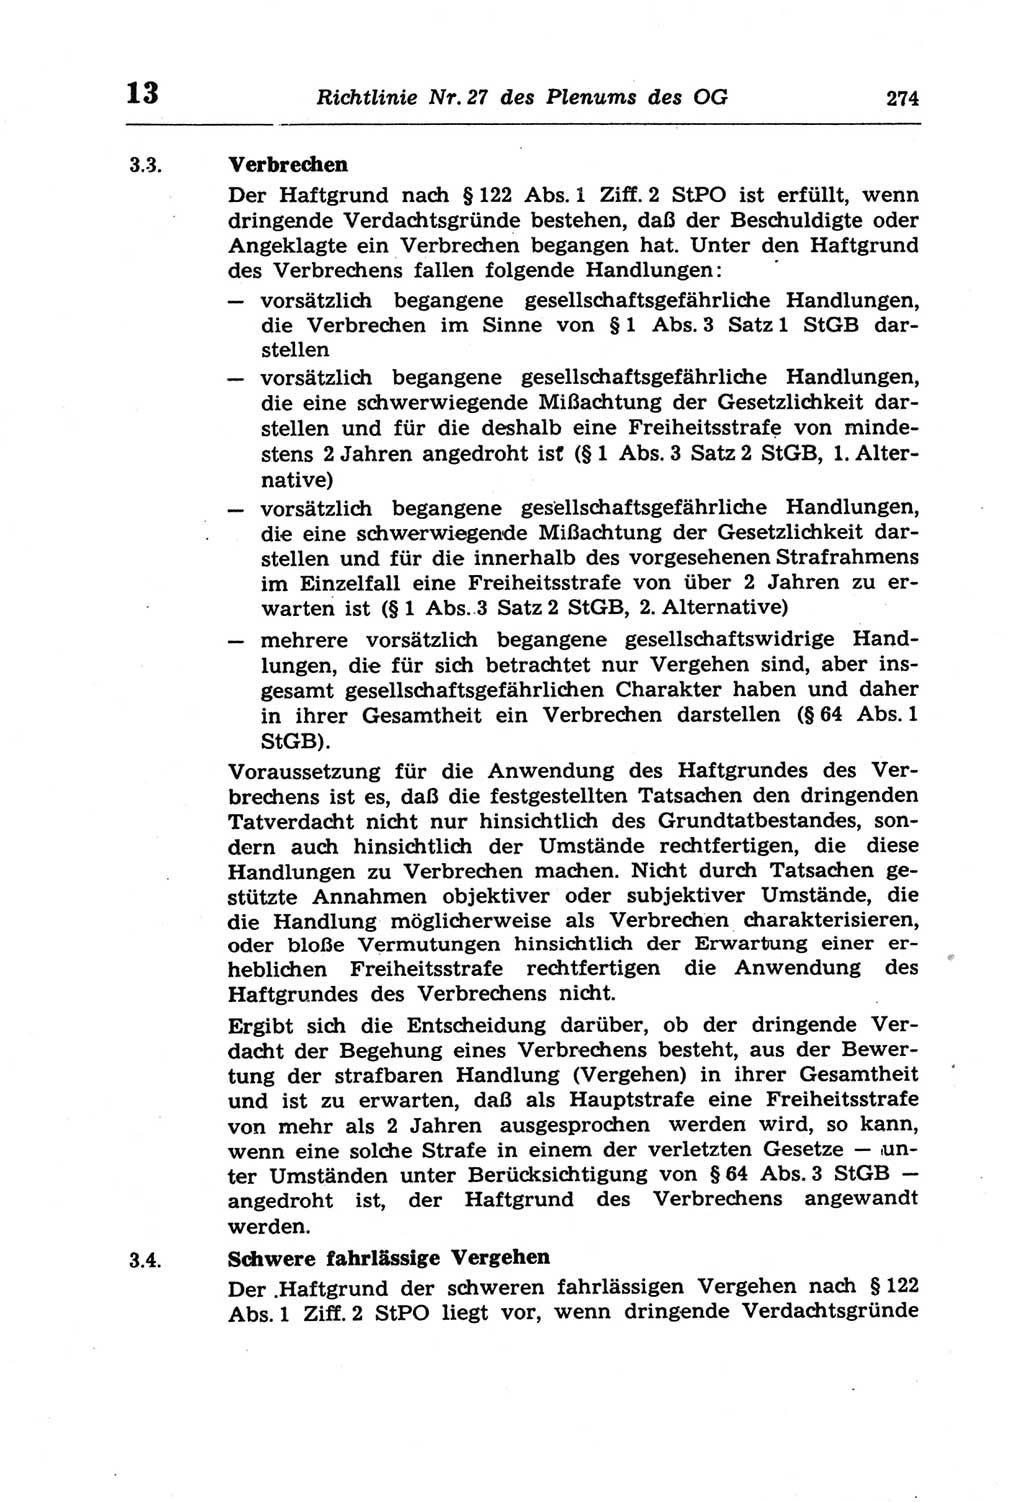 Strafprozeßordnung (StPO) der Deutschen Demokratischen Republik (DDR) und angrenzende Gesetze und Bestimmungen 1968, Seite 274 (StPO Ges. Bstgn. DDR 1968, S. 274)